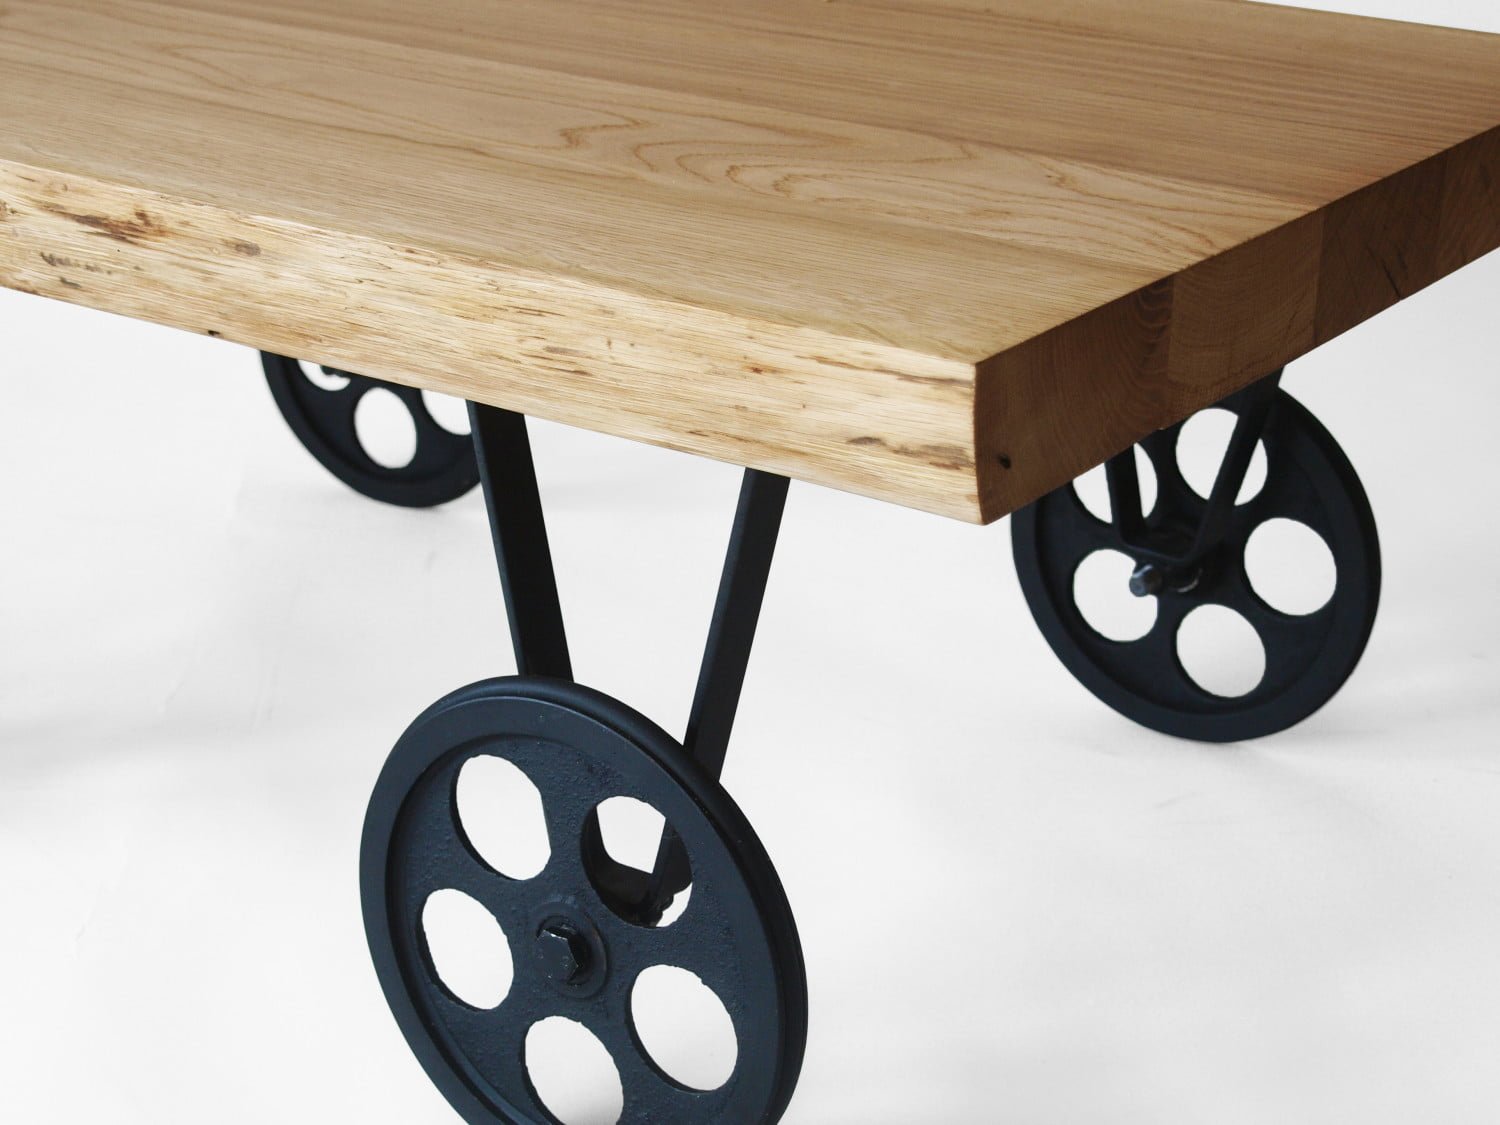 TOLIK 01 oak coffee table on black metal wheels in an industrial style